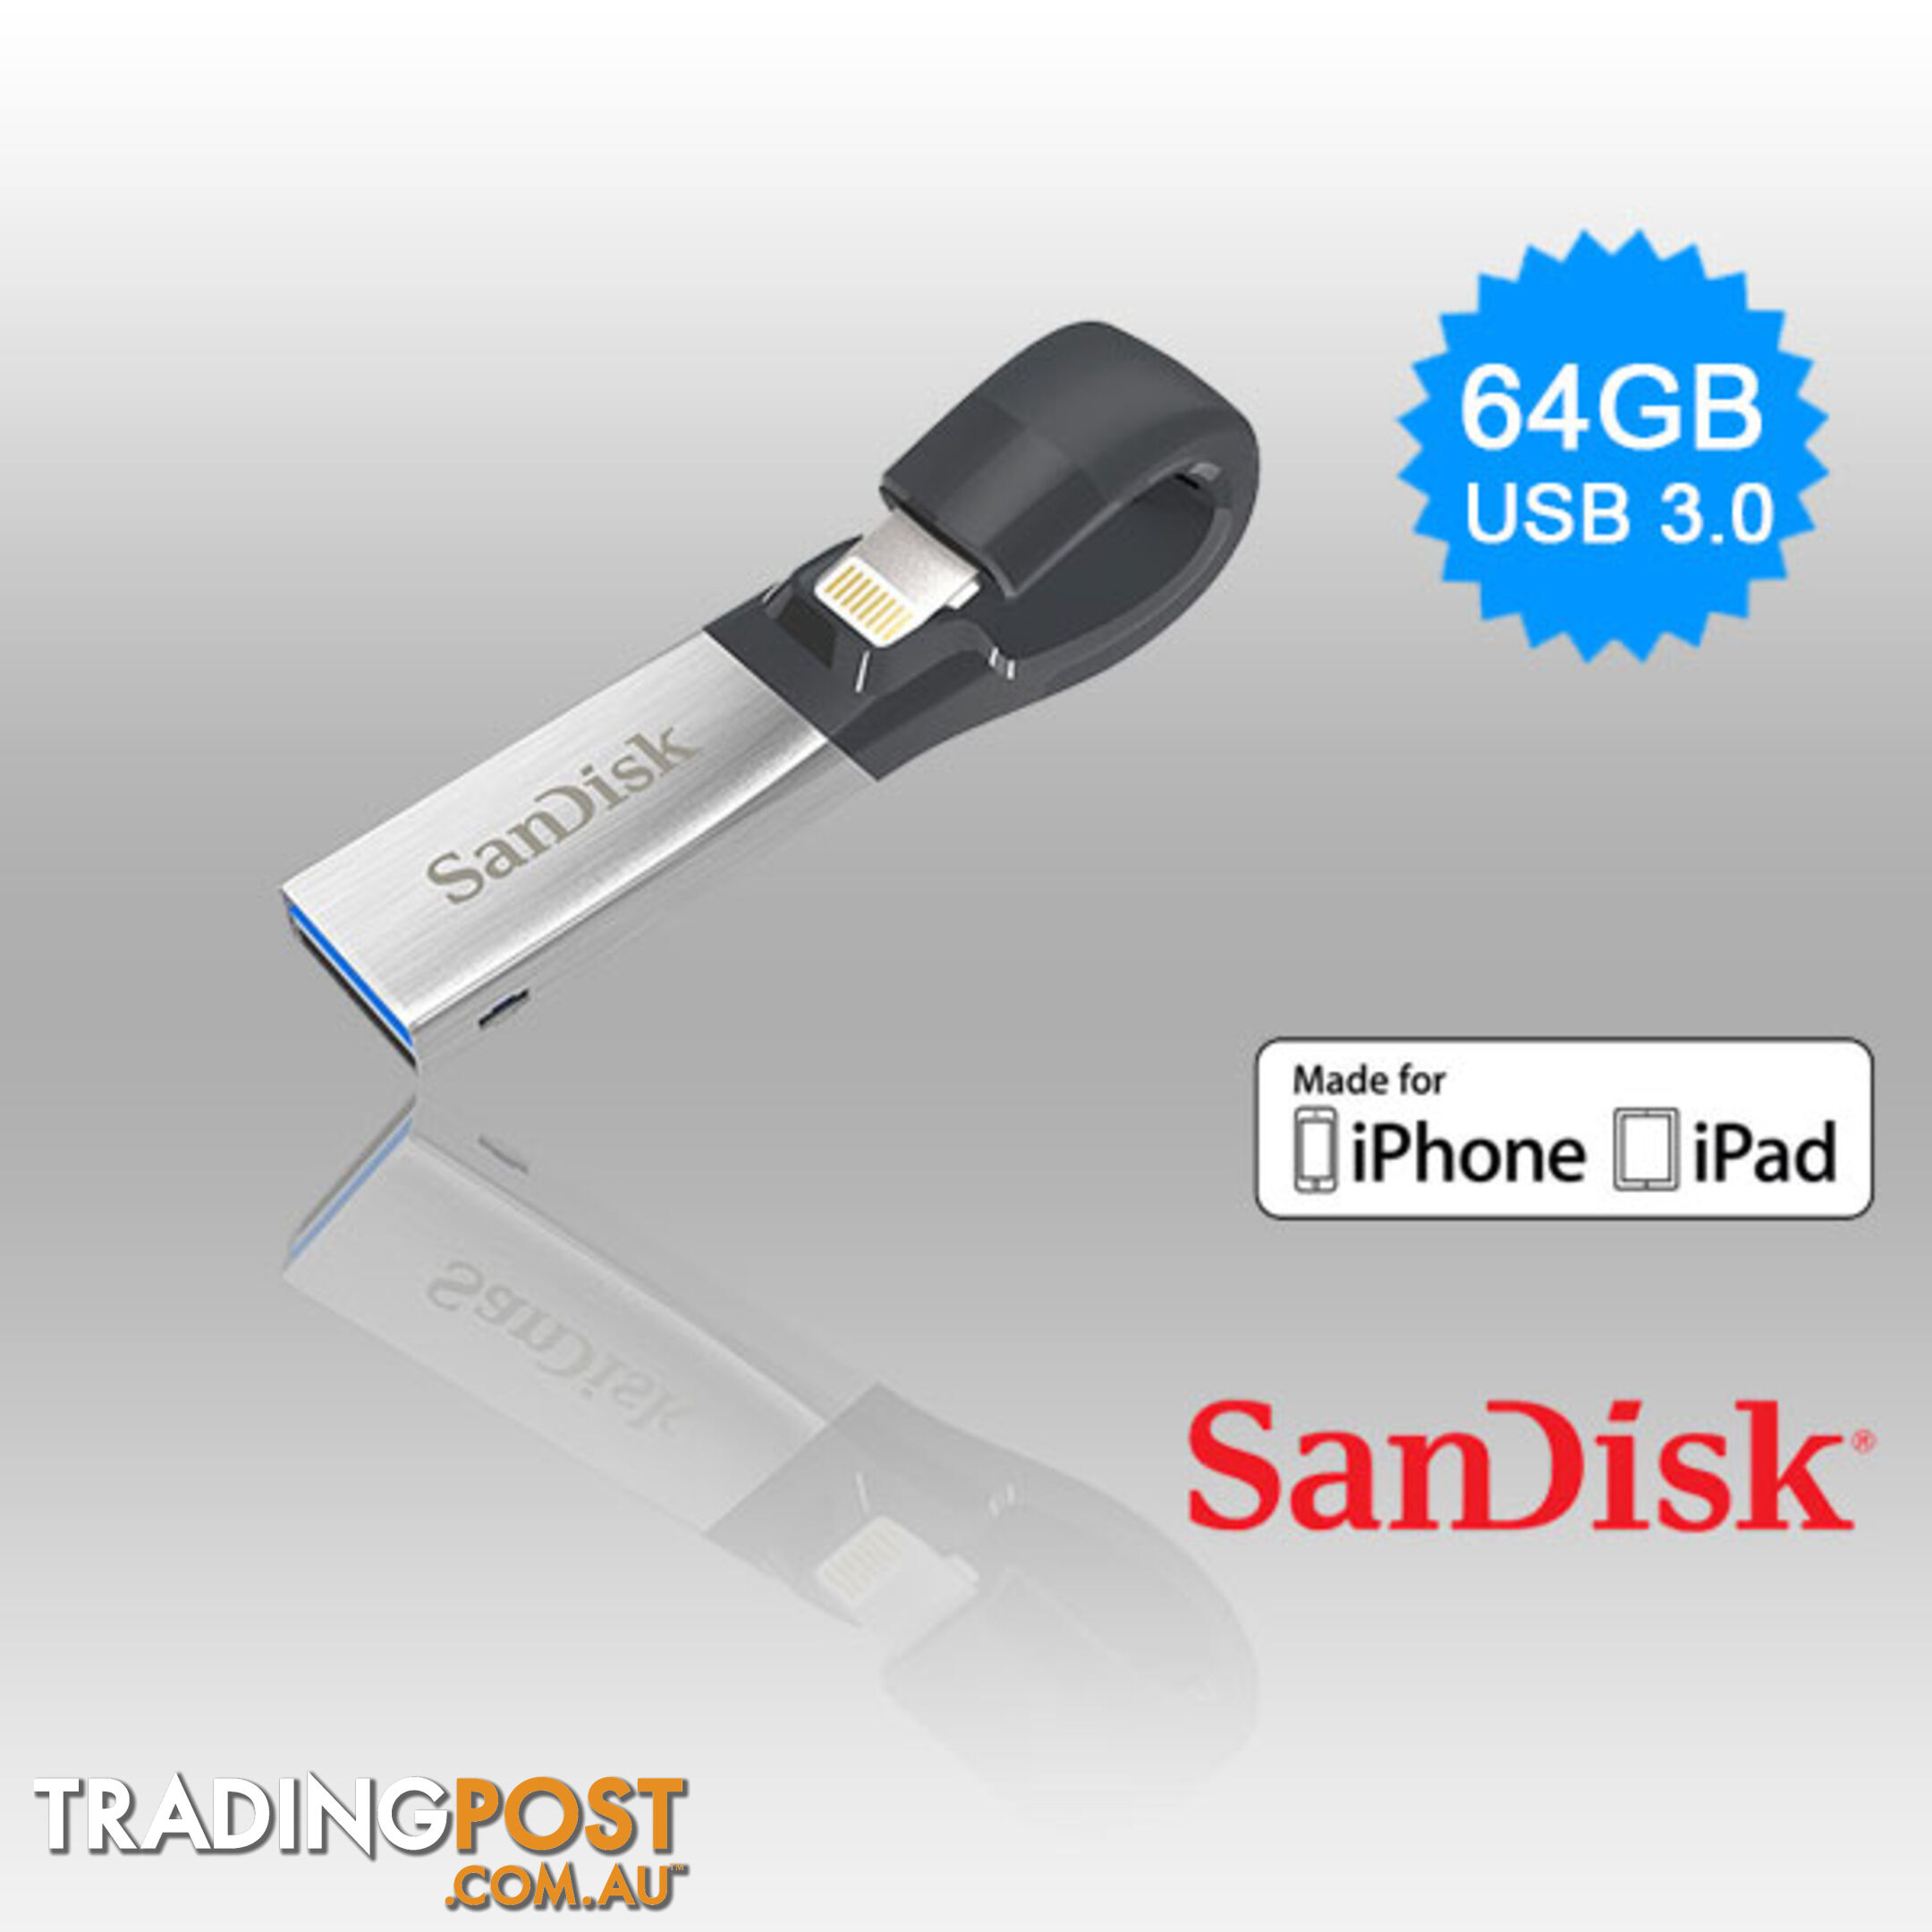 SANDISK IXPAND FLASH DRIVE SDIX30N 64GB GREY IOS USB 3.0   (SDIX30N-064G)